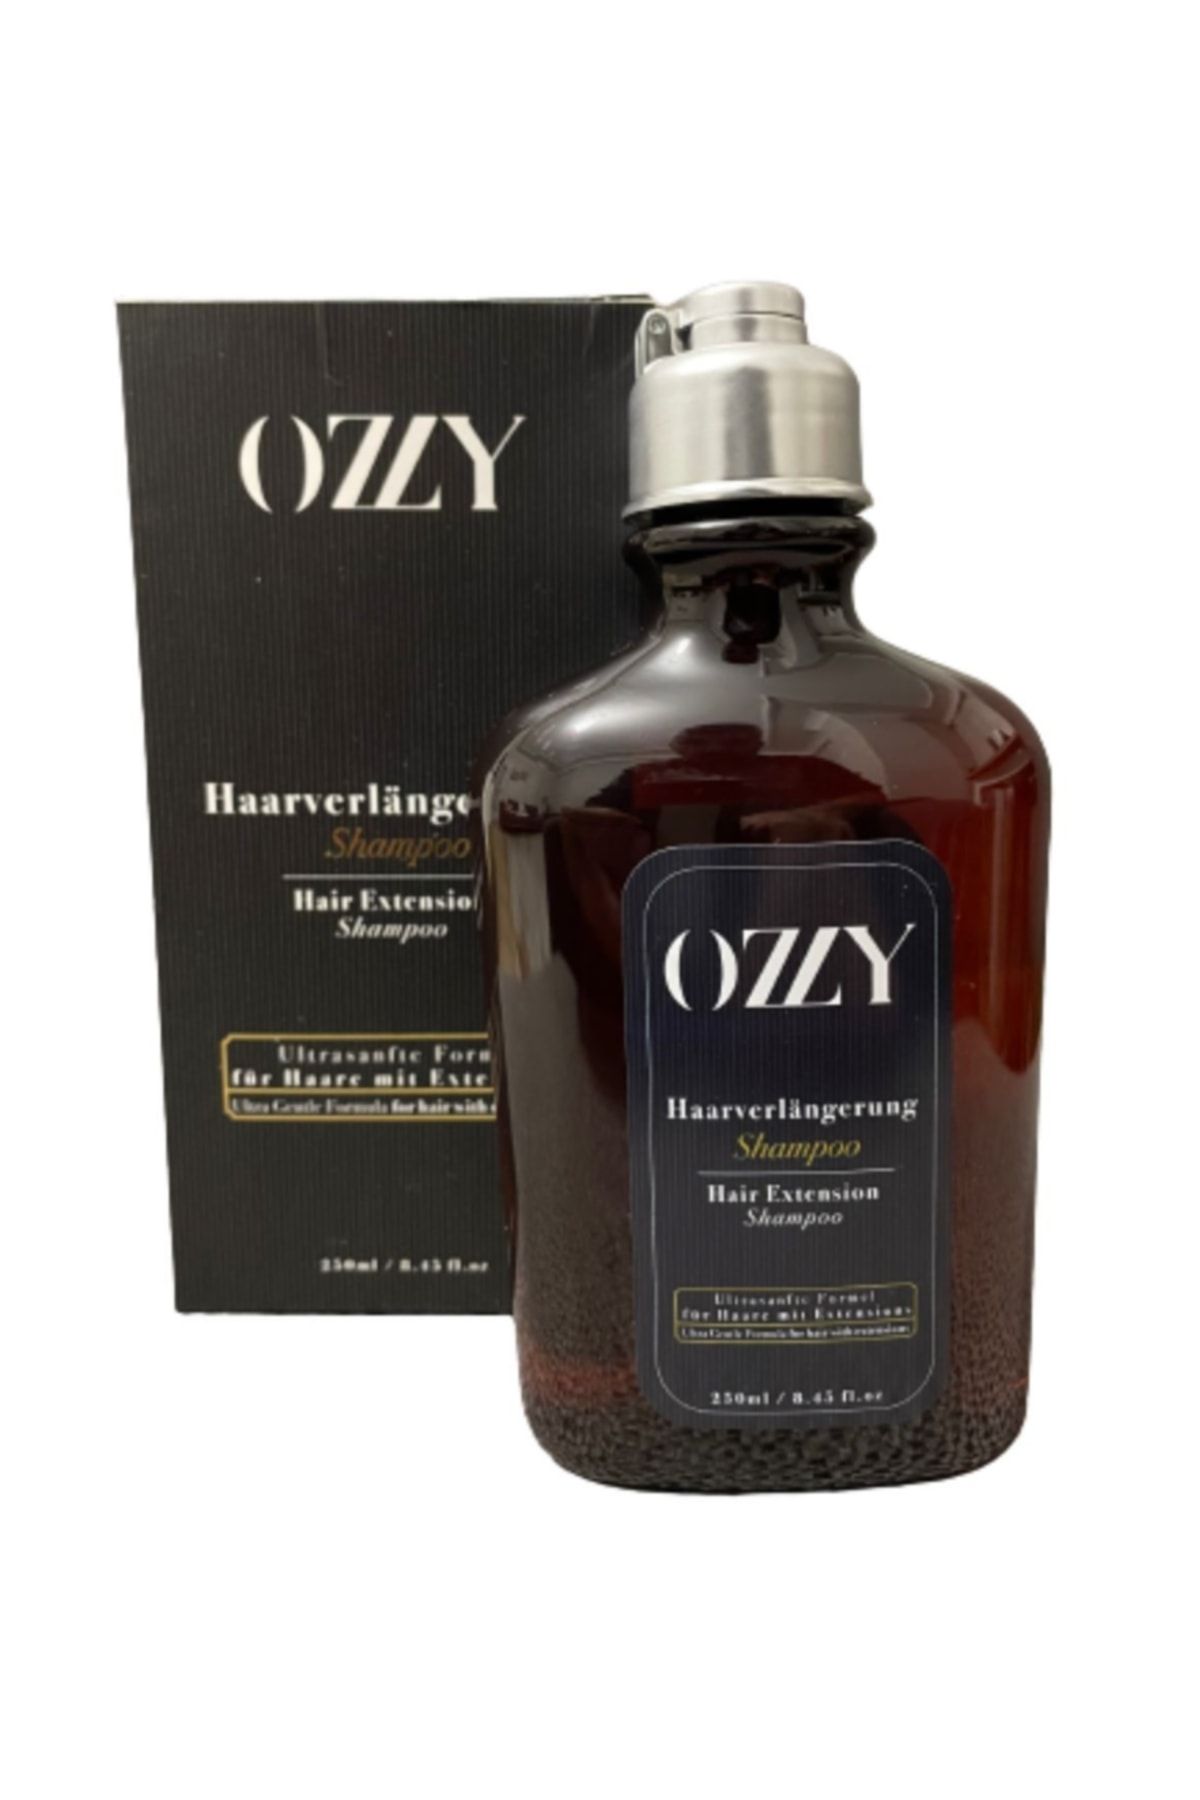 Ozzy Kaynaklı Ve Pırotez Saçlar Için Özel Bakım Şampuanı 250 ml Hair Extension Shampoo